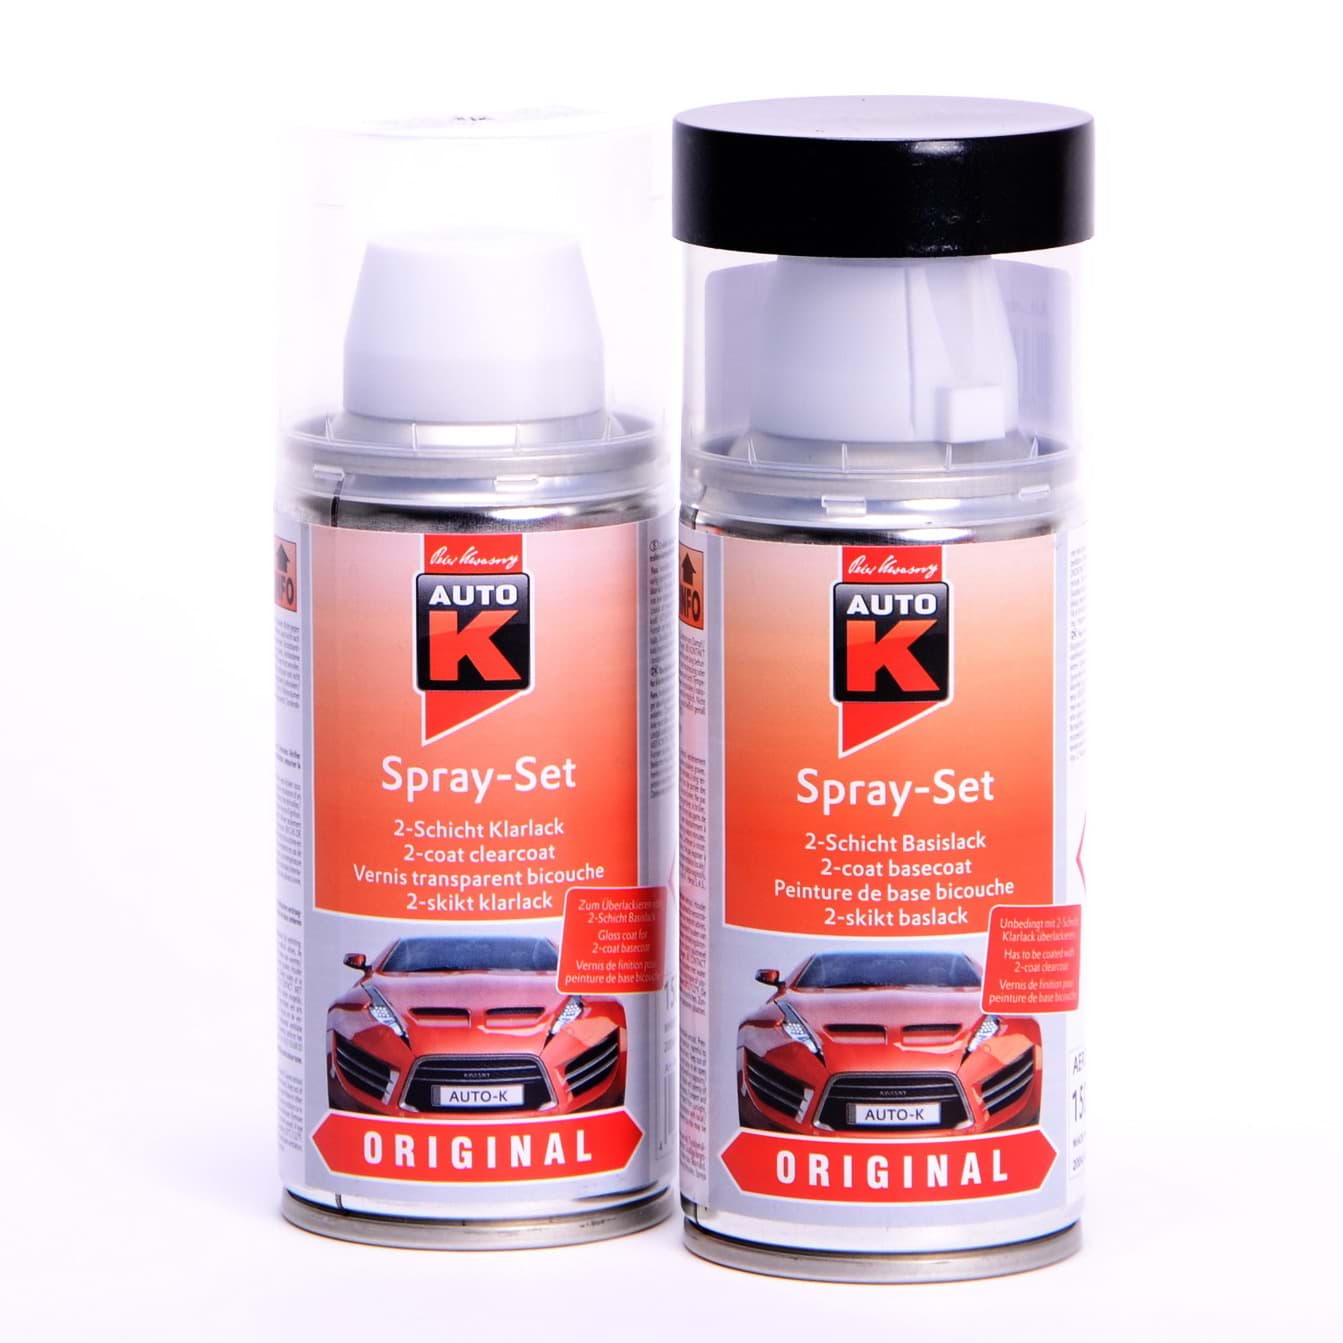 Afbeelding van Auto-K Spray-Set Autolack für Volkswagen, VW, Audi LD6T Electronicgrün met 20779